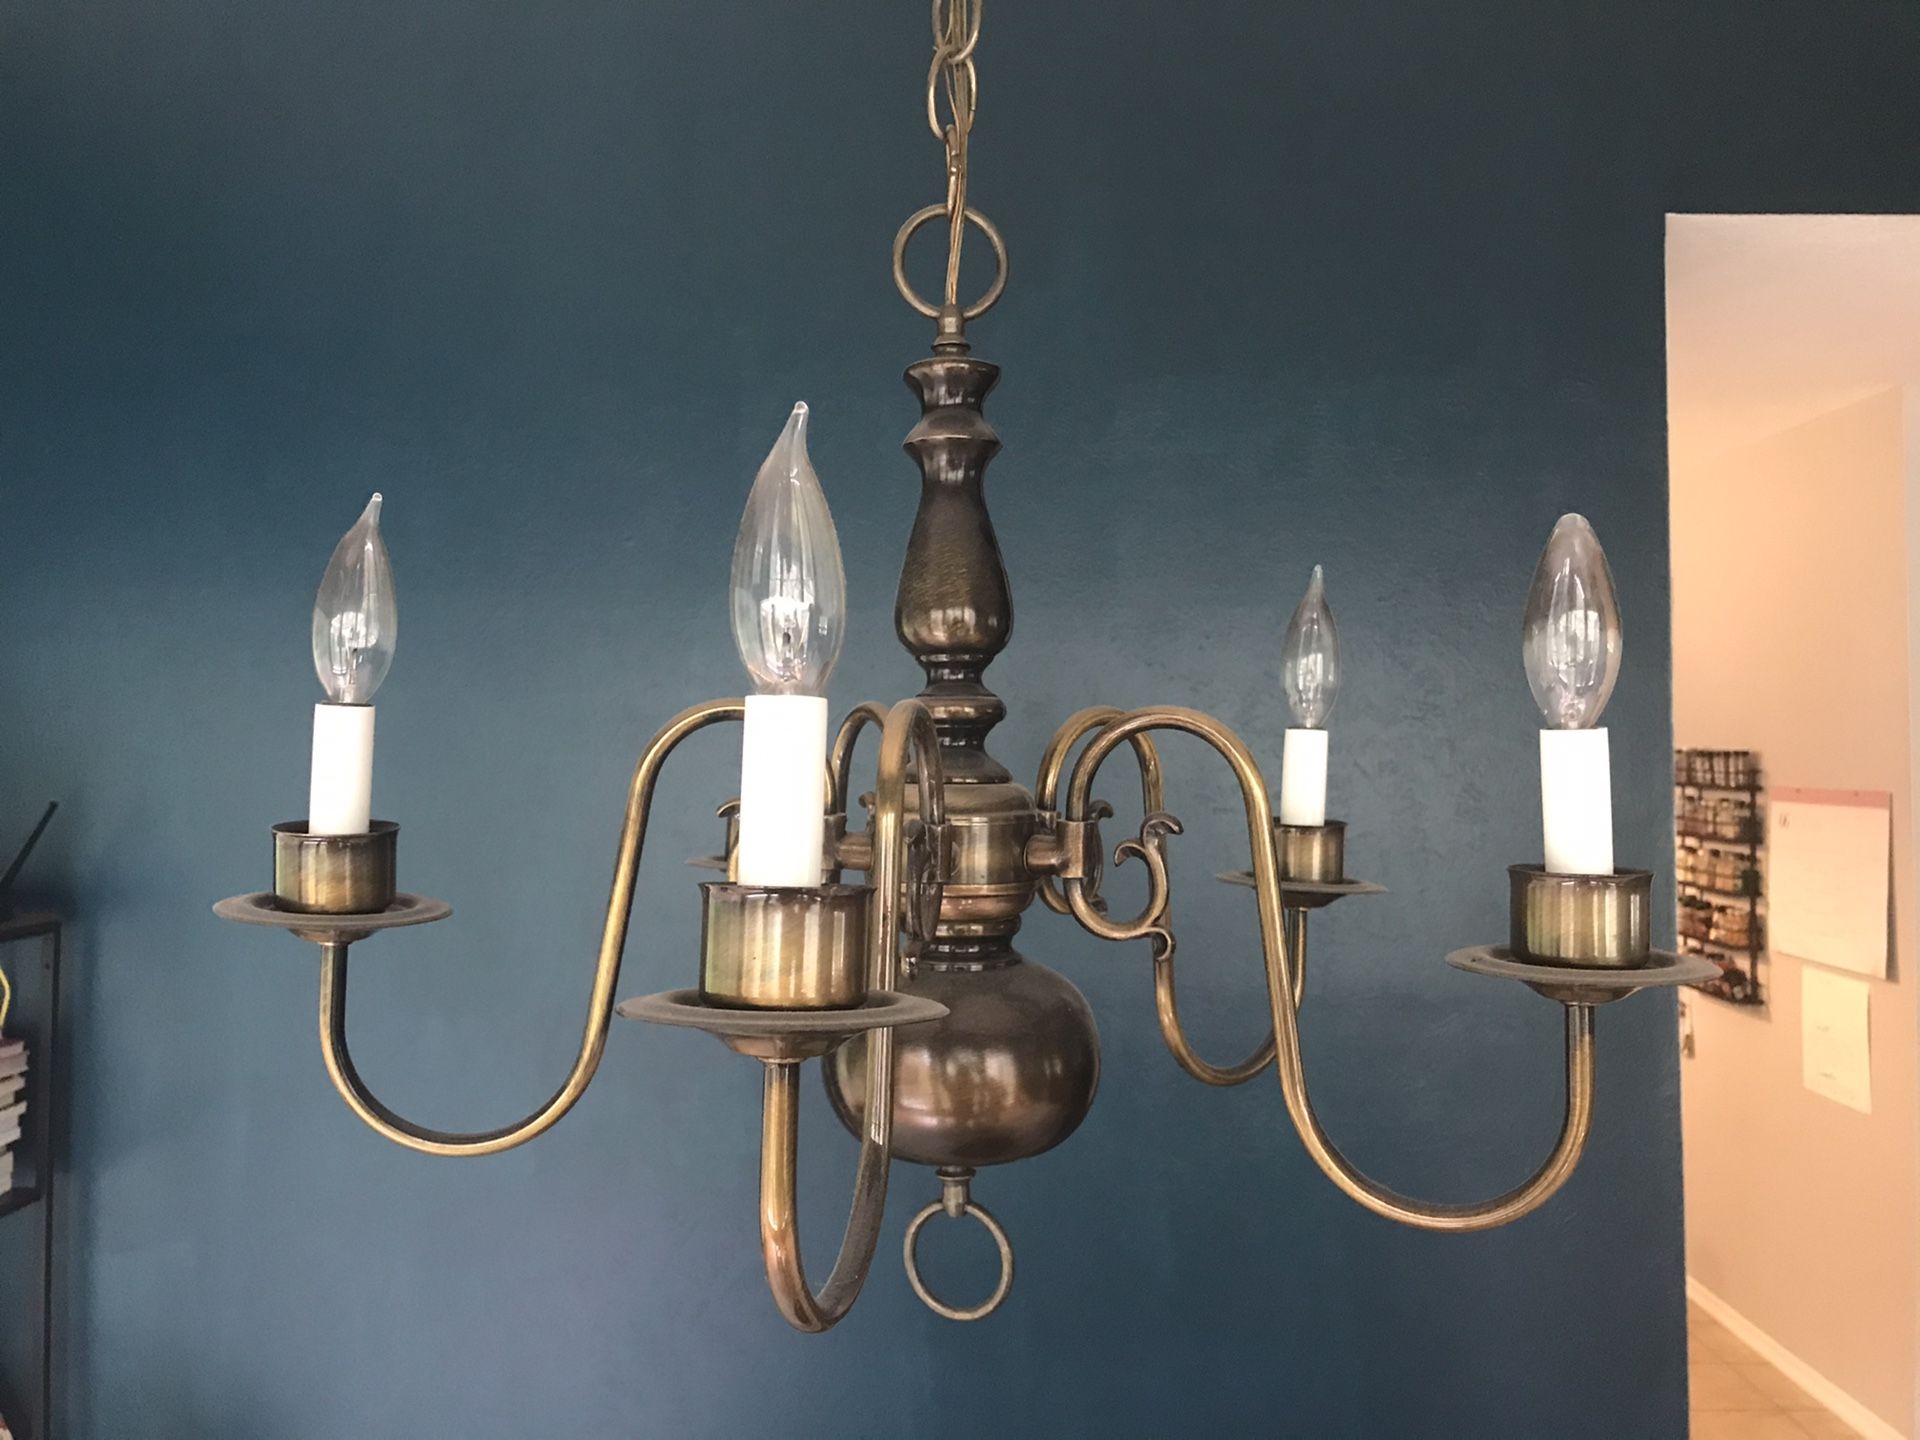 Antiqued brass chandelier